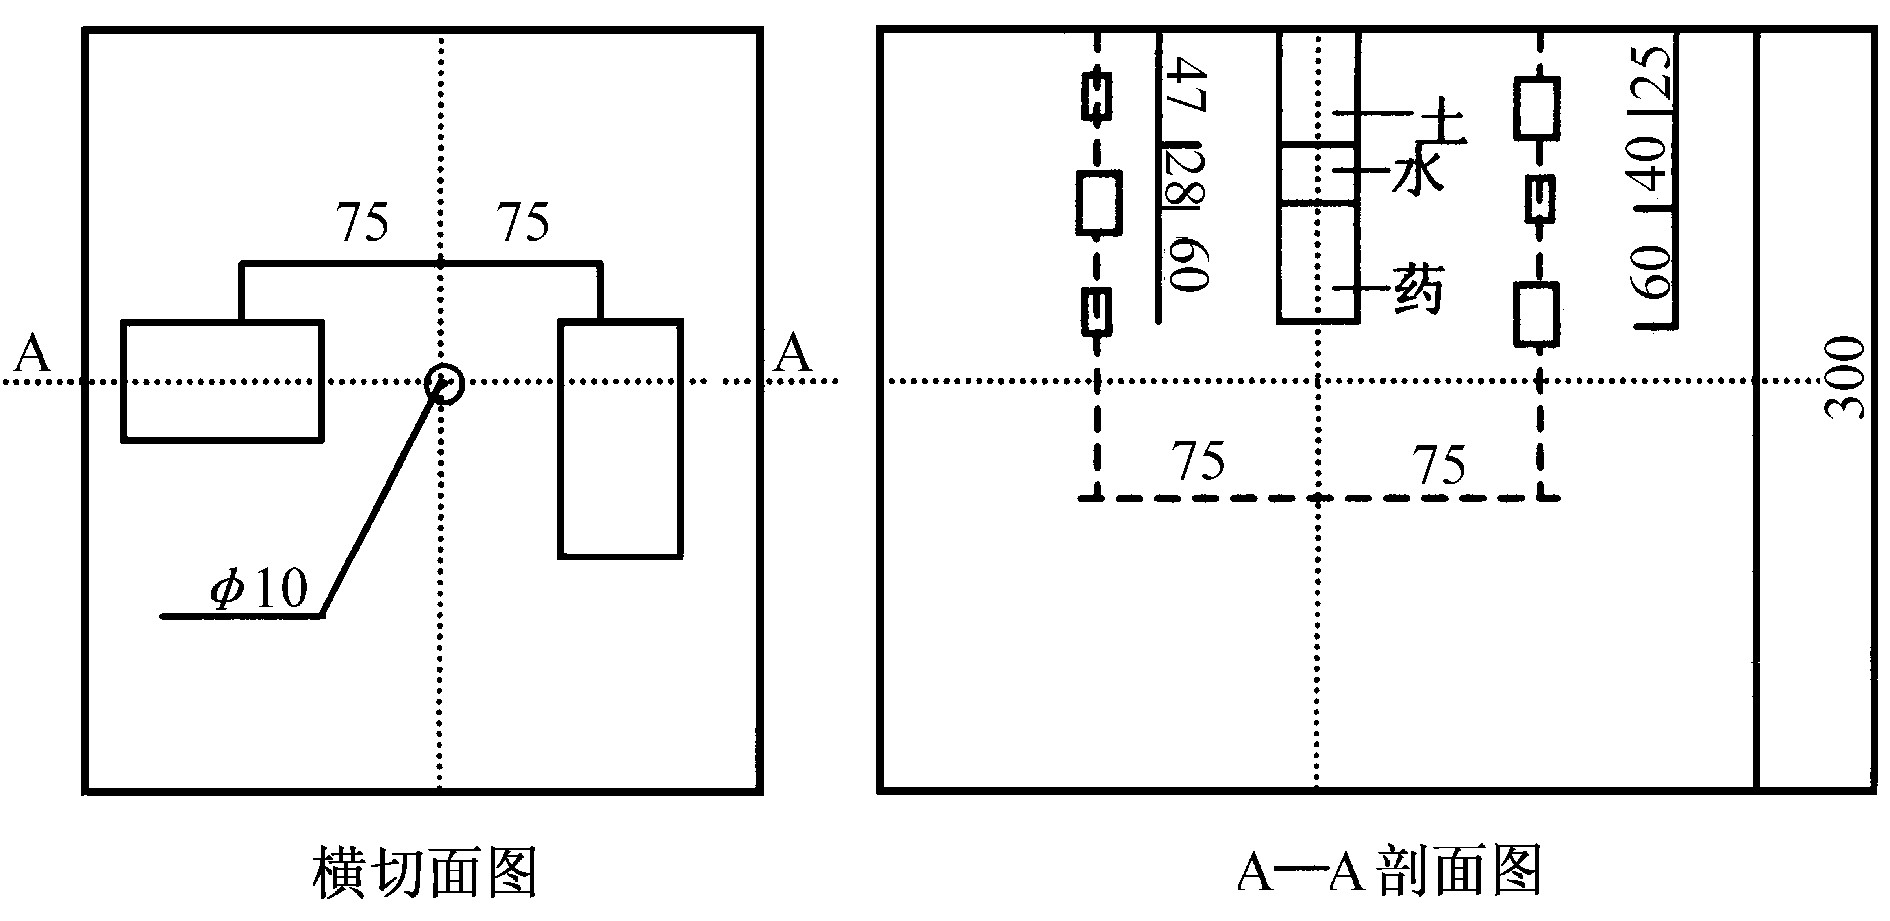 图4 应变砖布置 (/cm) 及装药结构
Fig.4 The structure of the location of 
strain brick and detonator